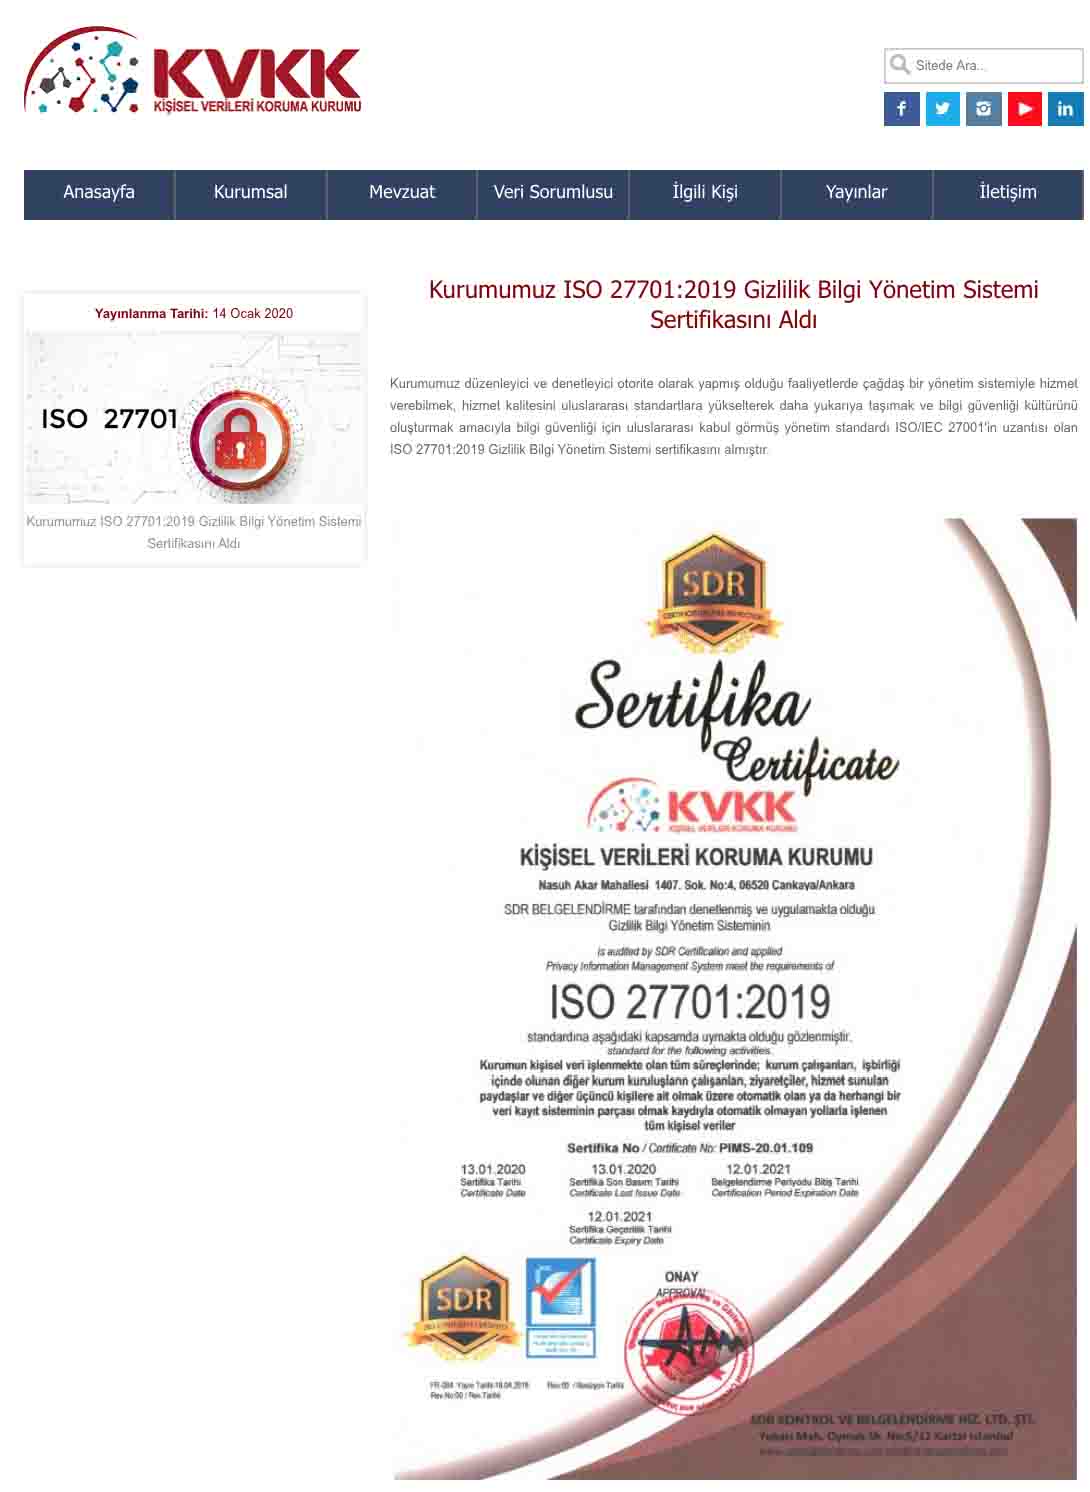 KVK Kurumu ISO 27701:2019 Gizlilik Bilgi Yönetim Sistemi Sertifikasını Aldı 1